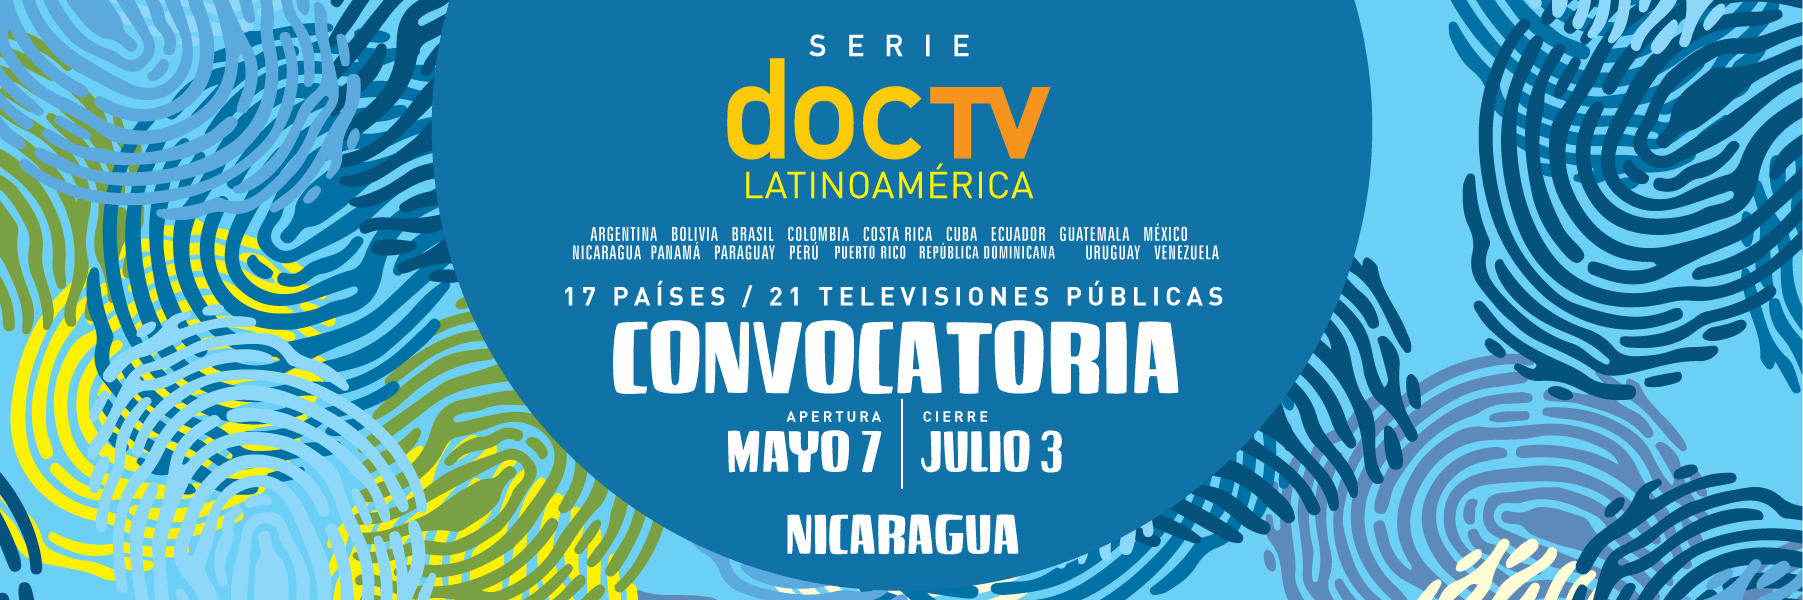 Convocatoria-DocTV-V-Edición-Nicaragua.png